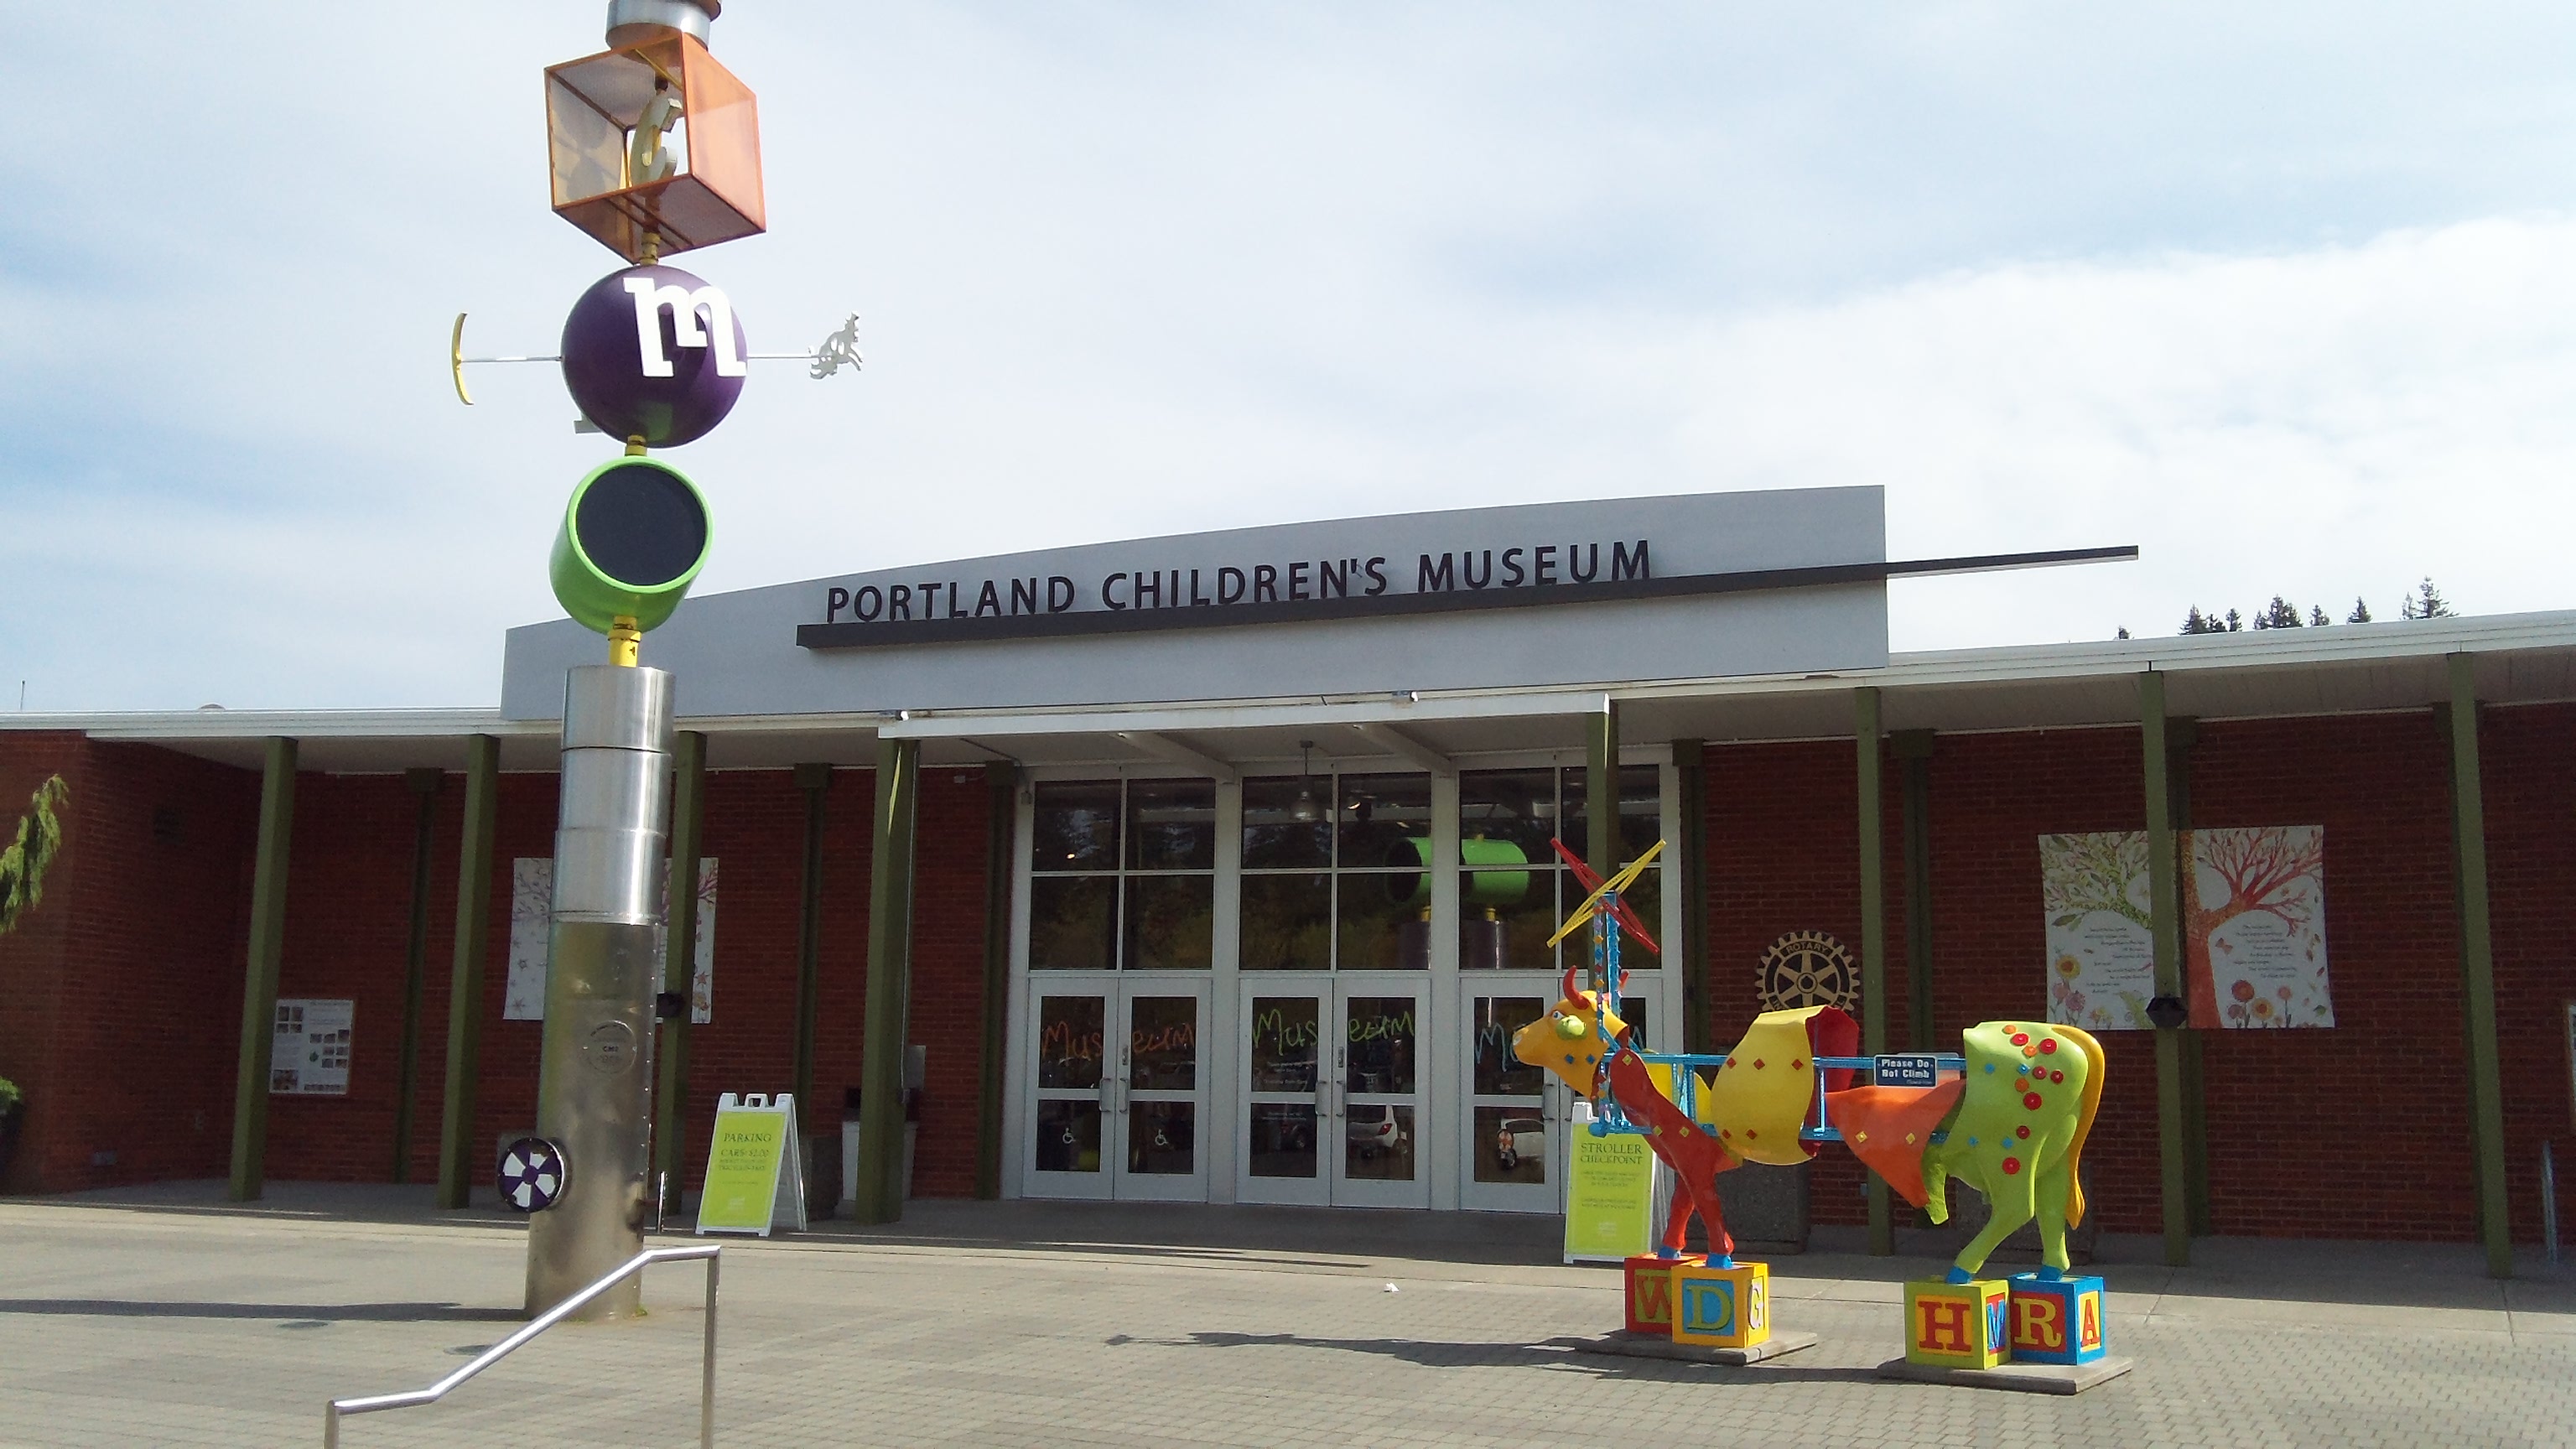 Southwest Portland Park - The Portland Children's Museum at Washington Park